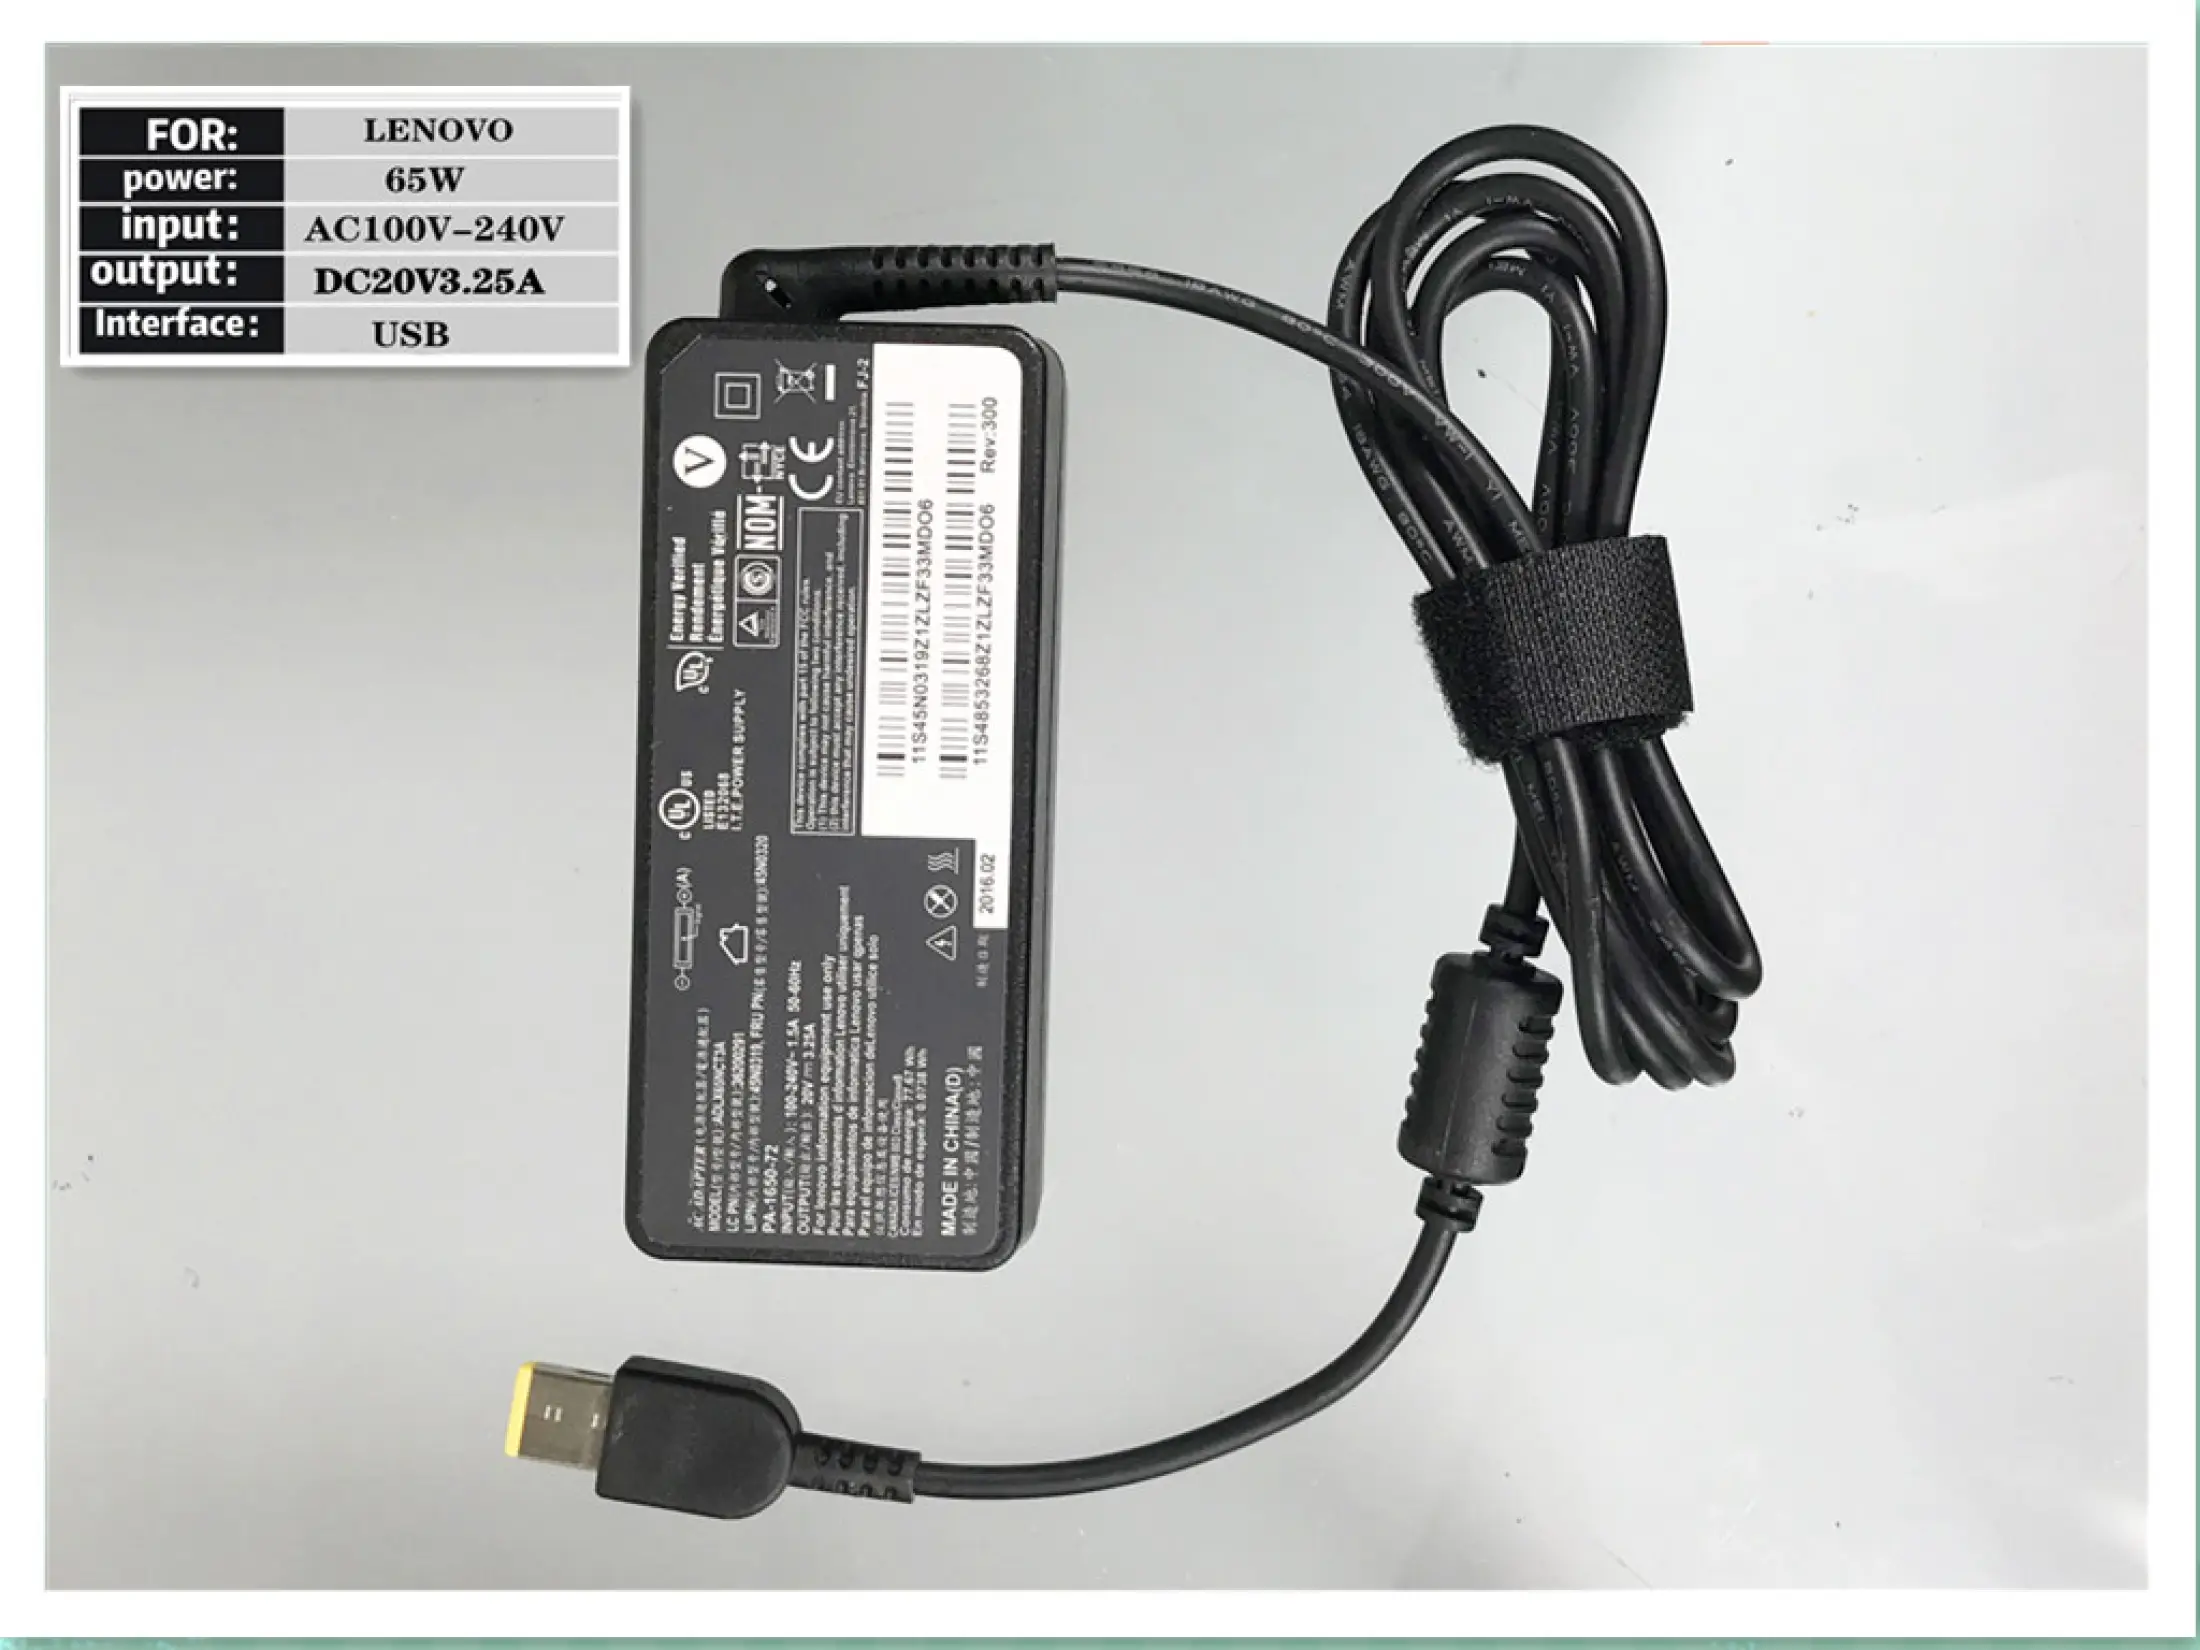 ภาพประกอบคำอธิบาย IT Adapter Notebook อะแดปเตอร์ For LENOVO 20V 3.25A หัว USB PORT (สีดำ)